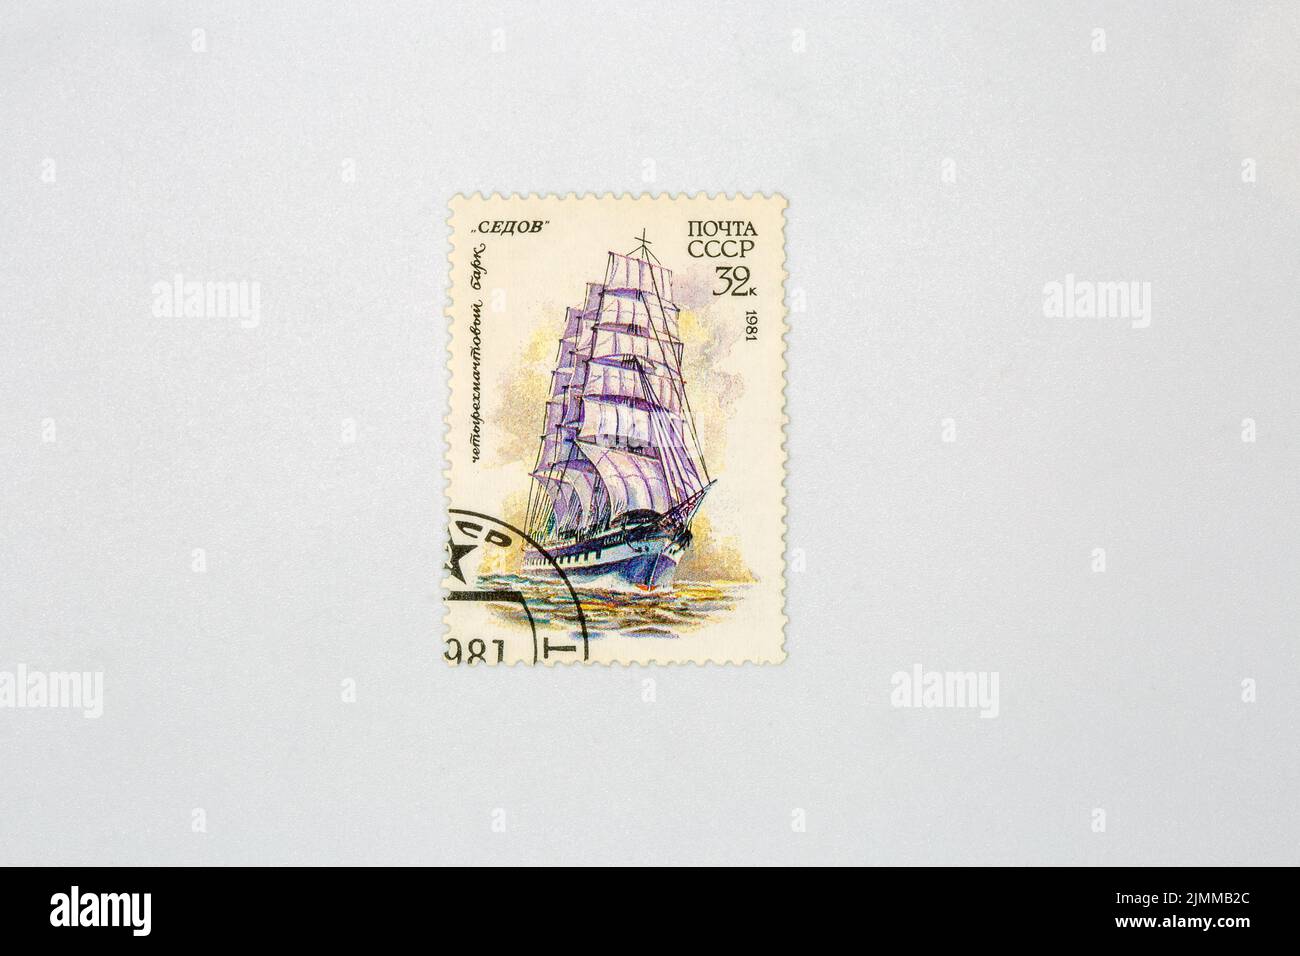 Ancien timbre à collectionner de la poste de l'URSS avec la barque à quatre mâts Sedov près de blanc. Vers 1981. Banque D'Images